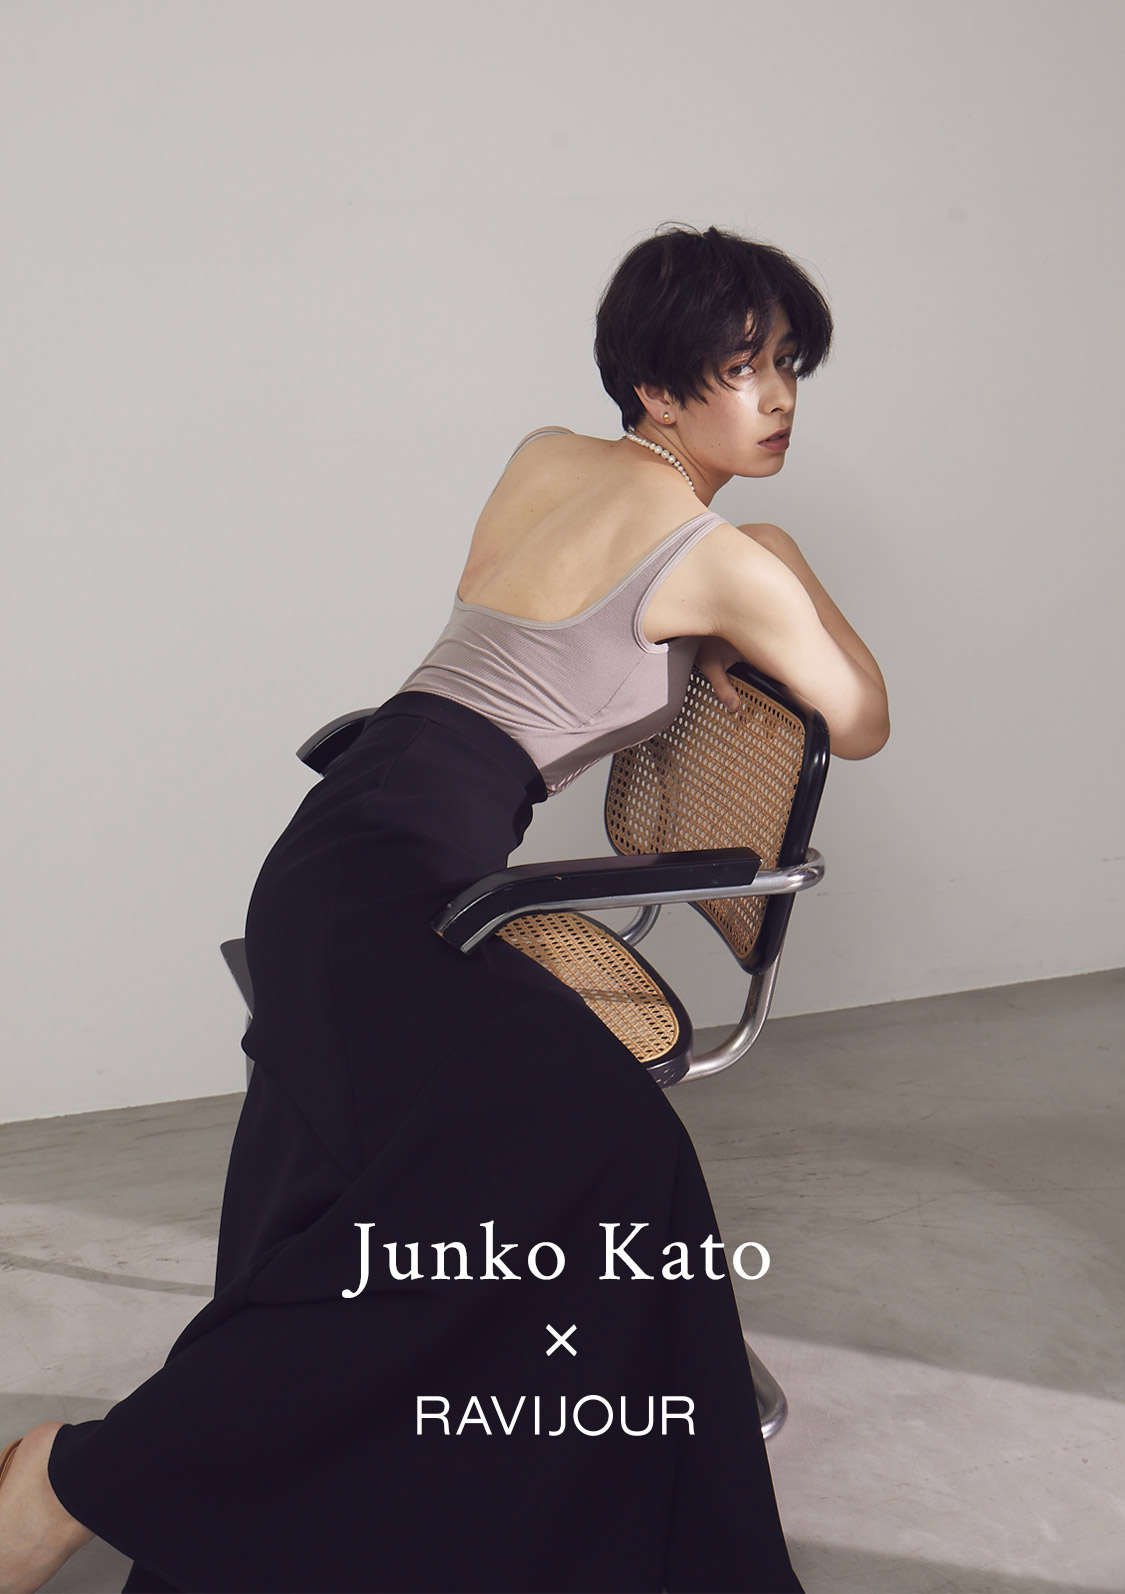 Junko Kato x RAVIJOUR】即完売となった大人気タンクトップに、待望の 